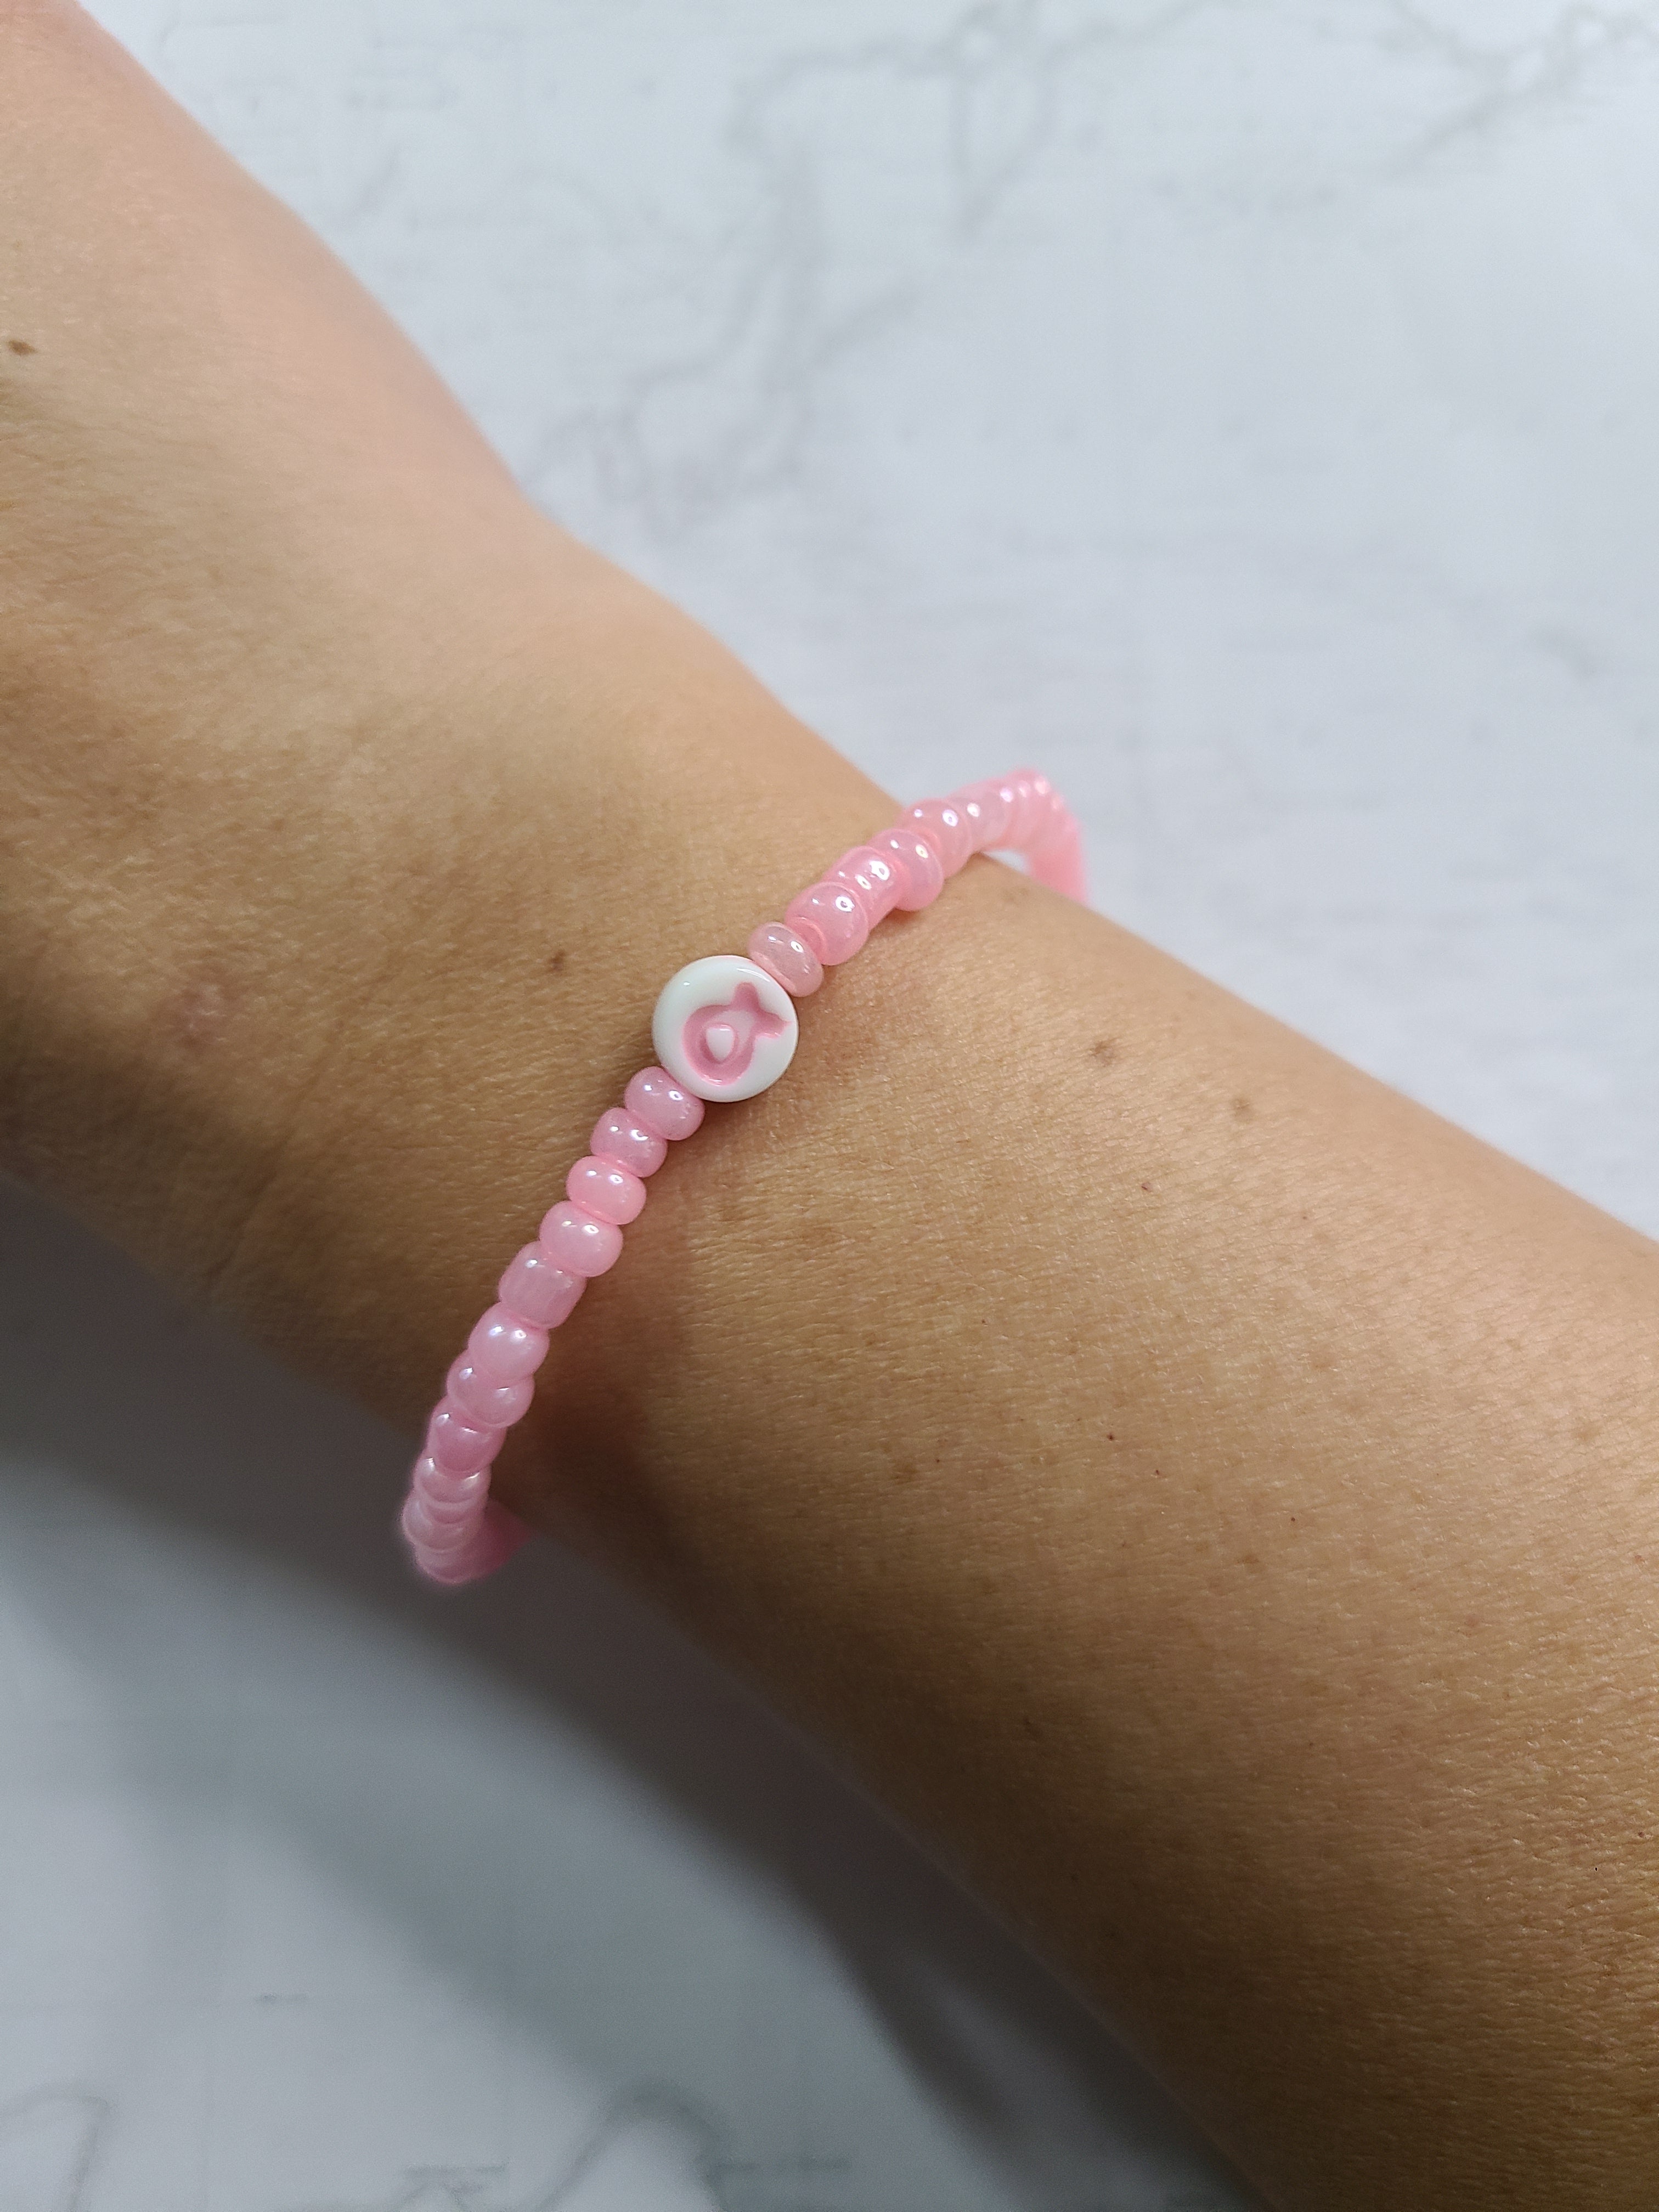 The Pink Breast Cancer Awareness Bracelet | Julie Vos